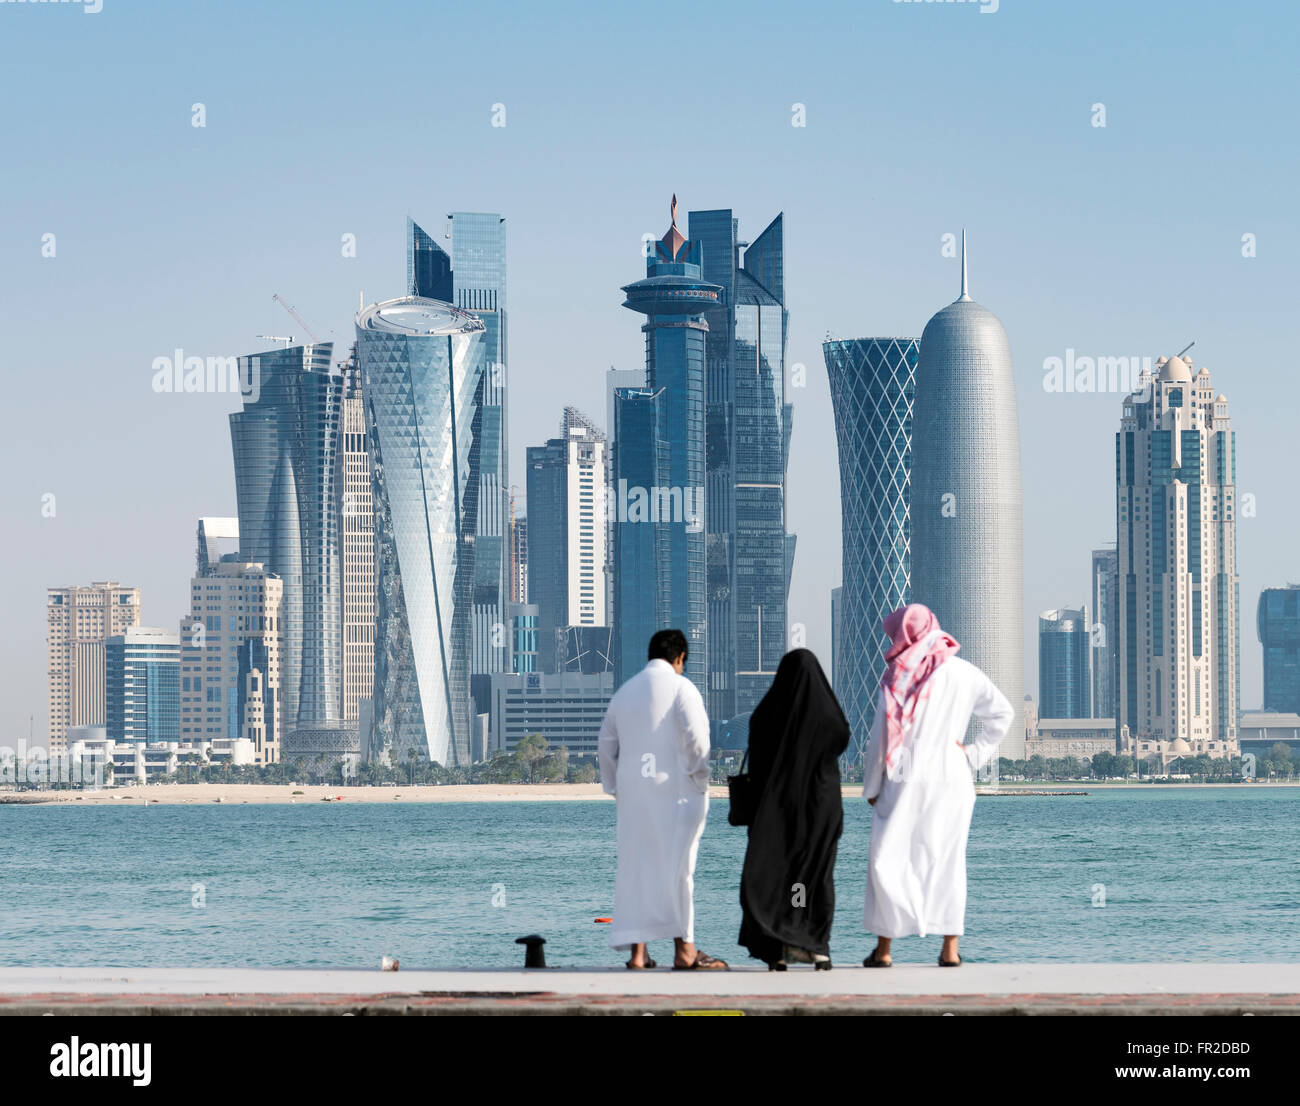 Vista a lo largo de la costanera de la Corniche hacia modernas torres de oficinas en West Bay, distrito financiero y de negocios en Doha (Qatar) Foto de stock